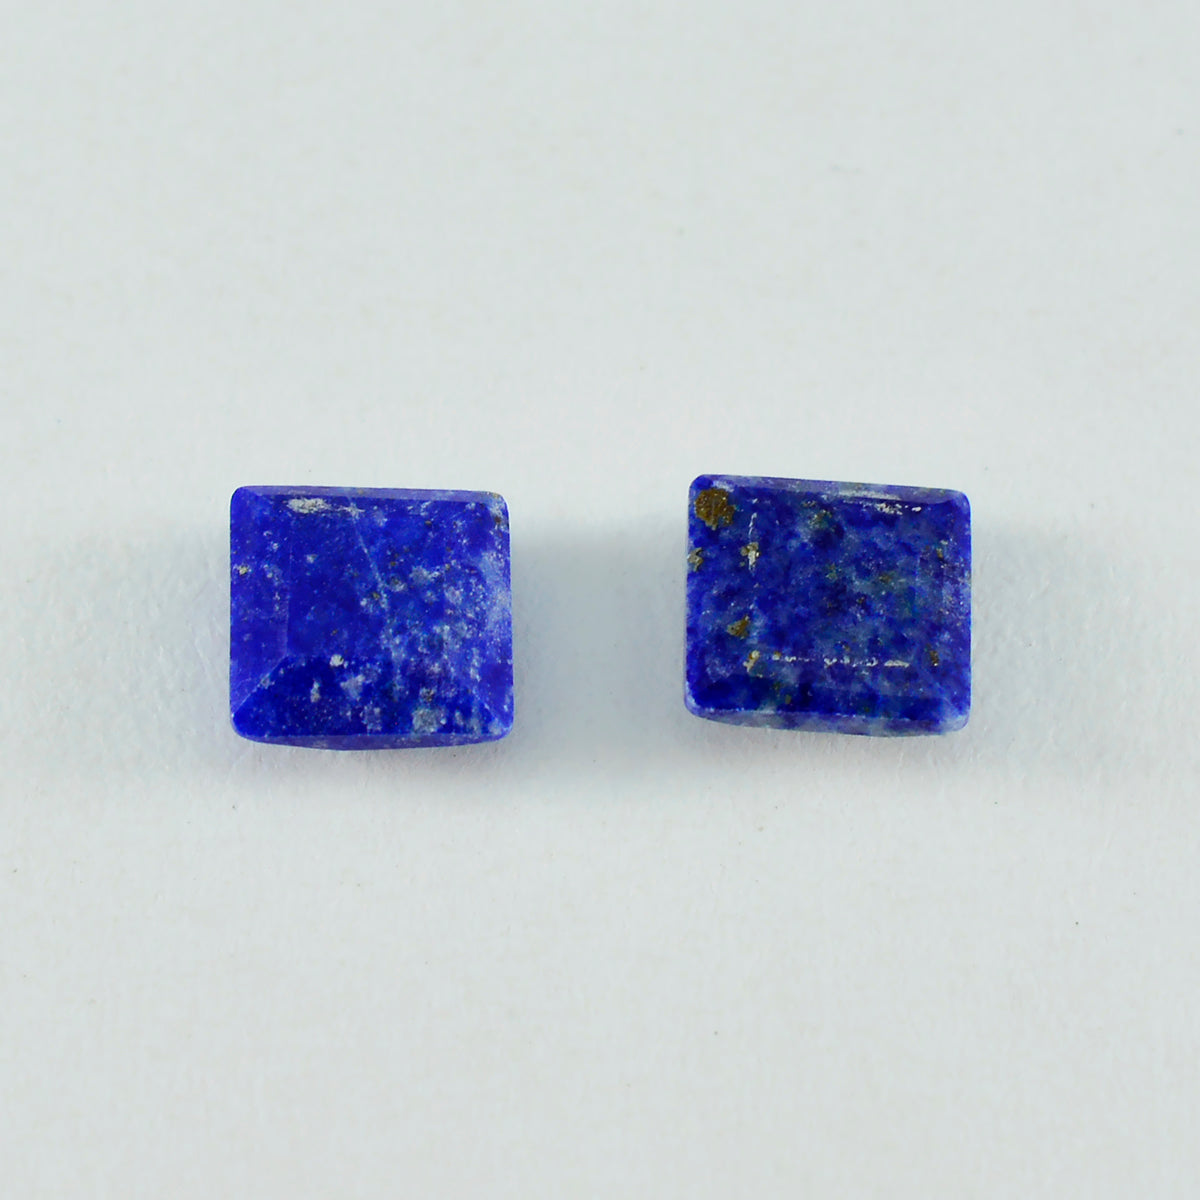 Riyogems 1PC Echte Blauwe Lapis Lazuli Facet 15x15 mm Vierkante Vorm prachtige Kwaliteit Edelstenen